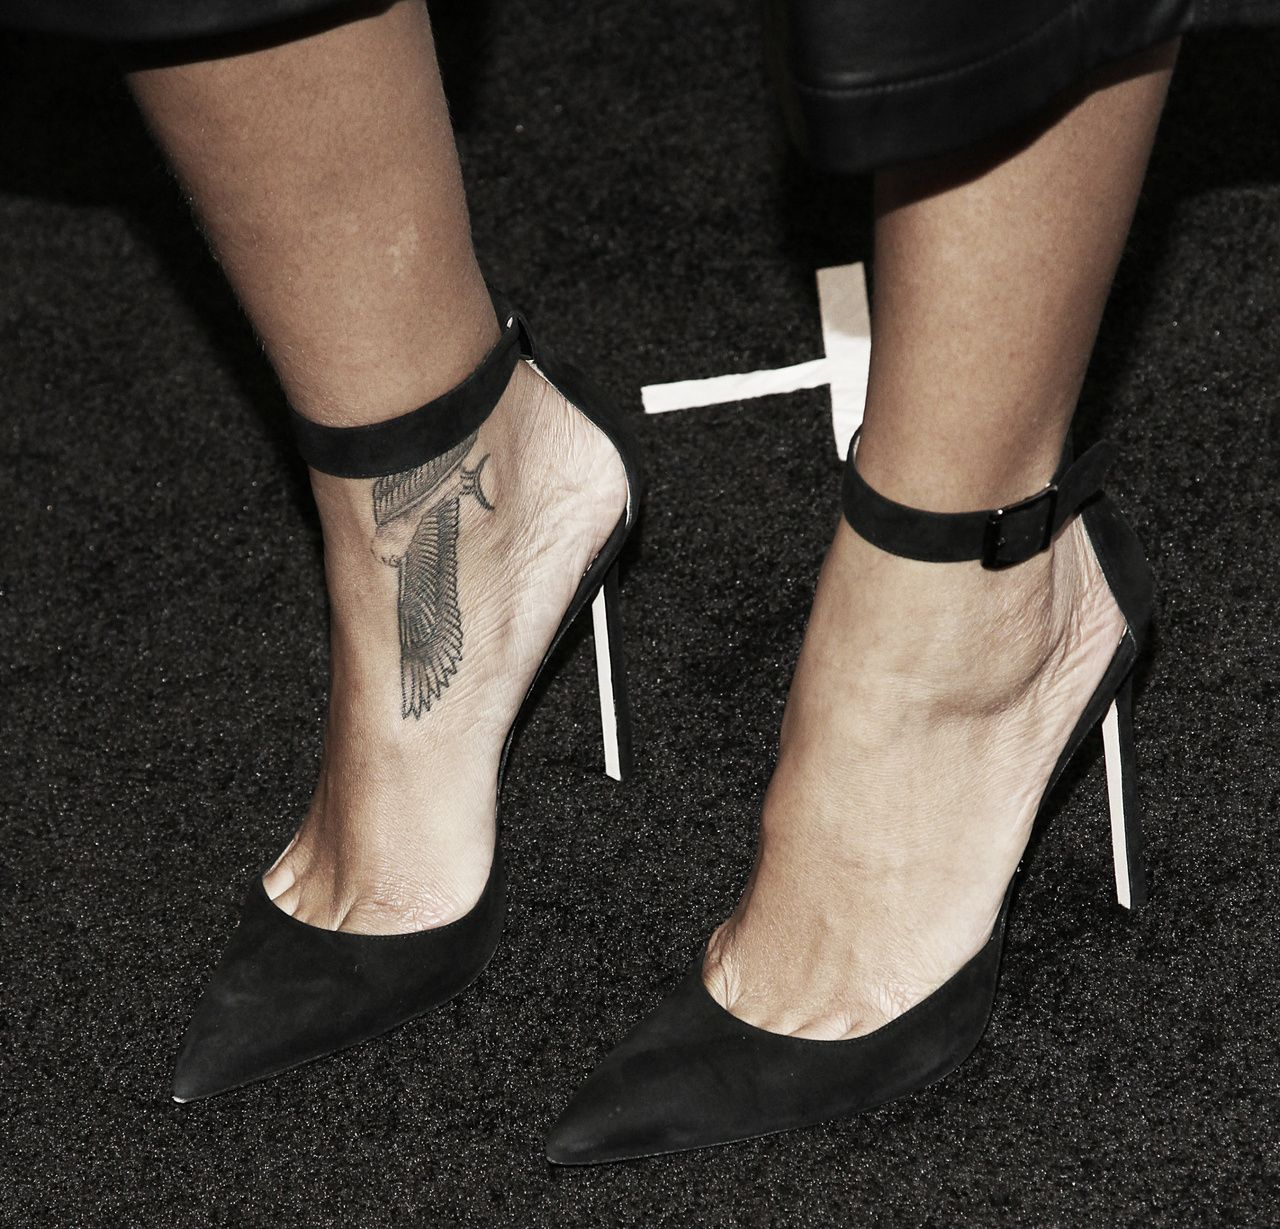 Rihanna Tattoo Tattoos Foot Tattoos Rihanna Ankle Tattoo Rihanna for measurements 1280 X 1229